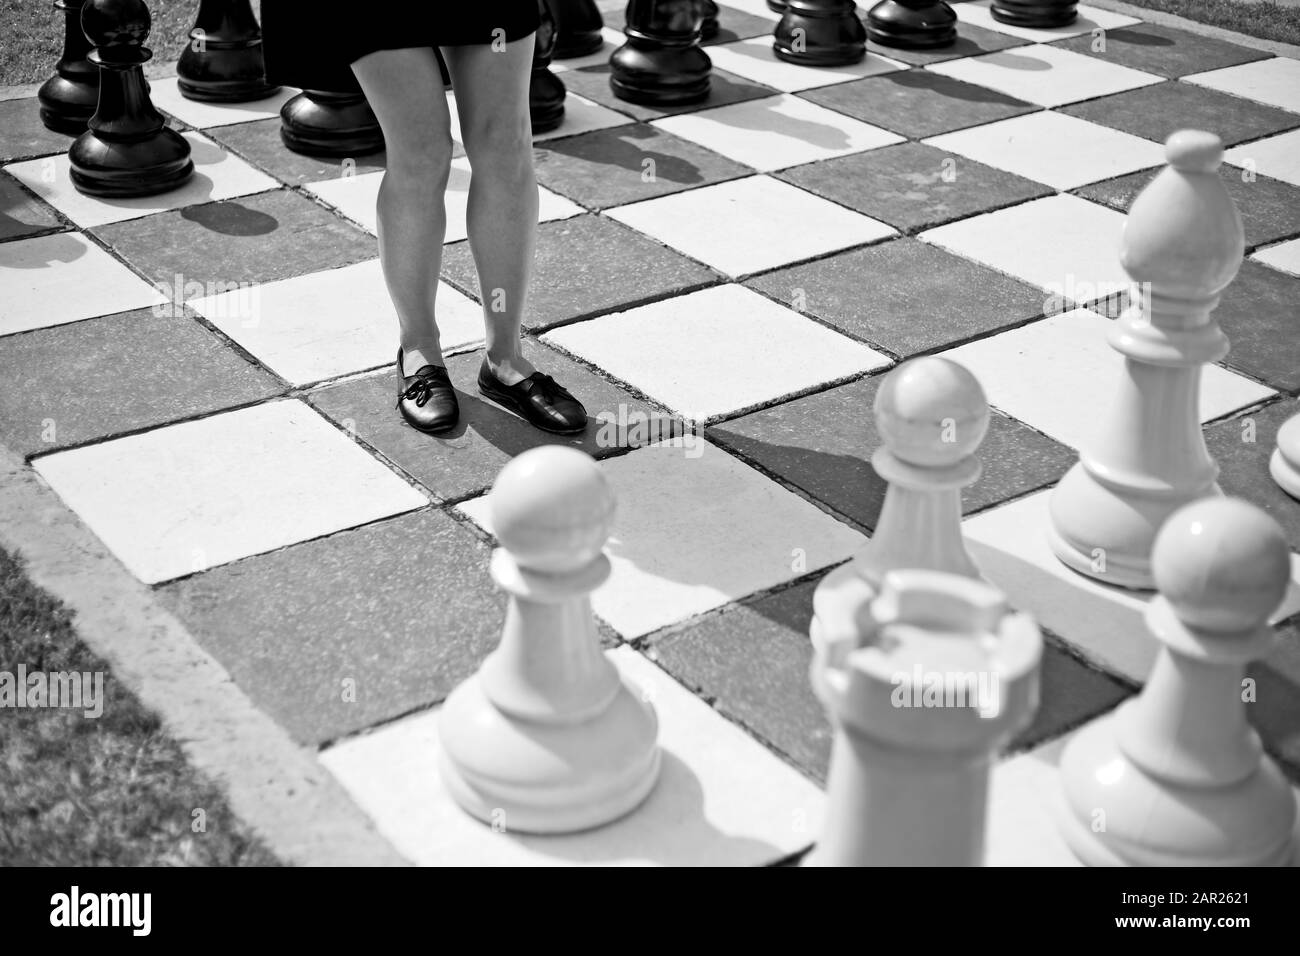 Cliché en échelle de gris d'une femelle debout au milieu d'un grand jeu d'échecs Banque D'Images